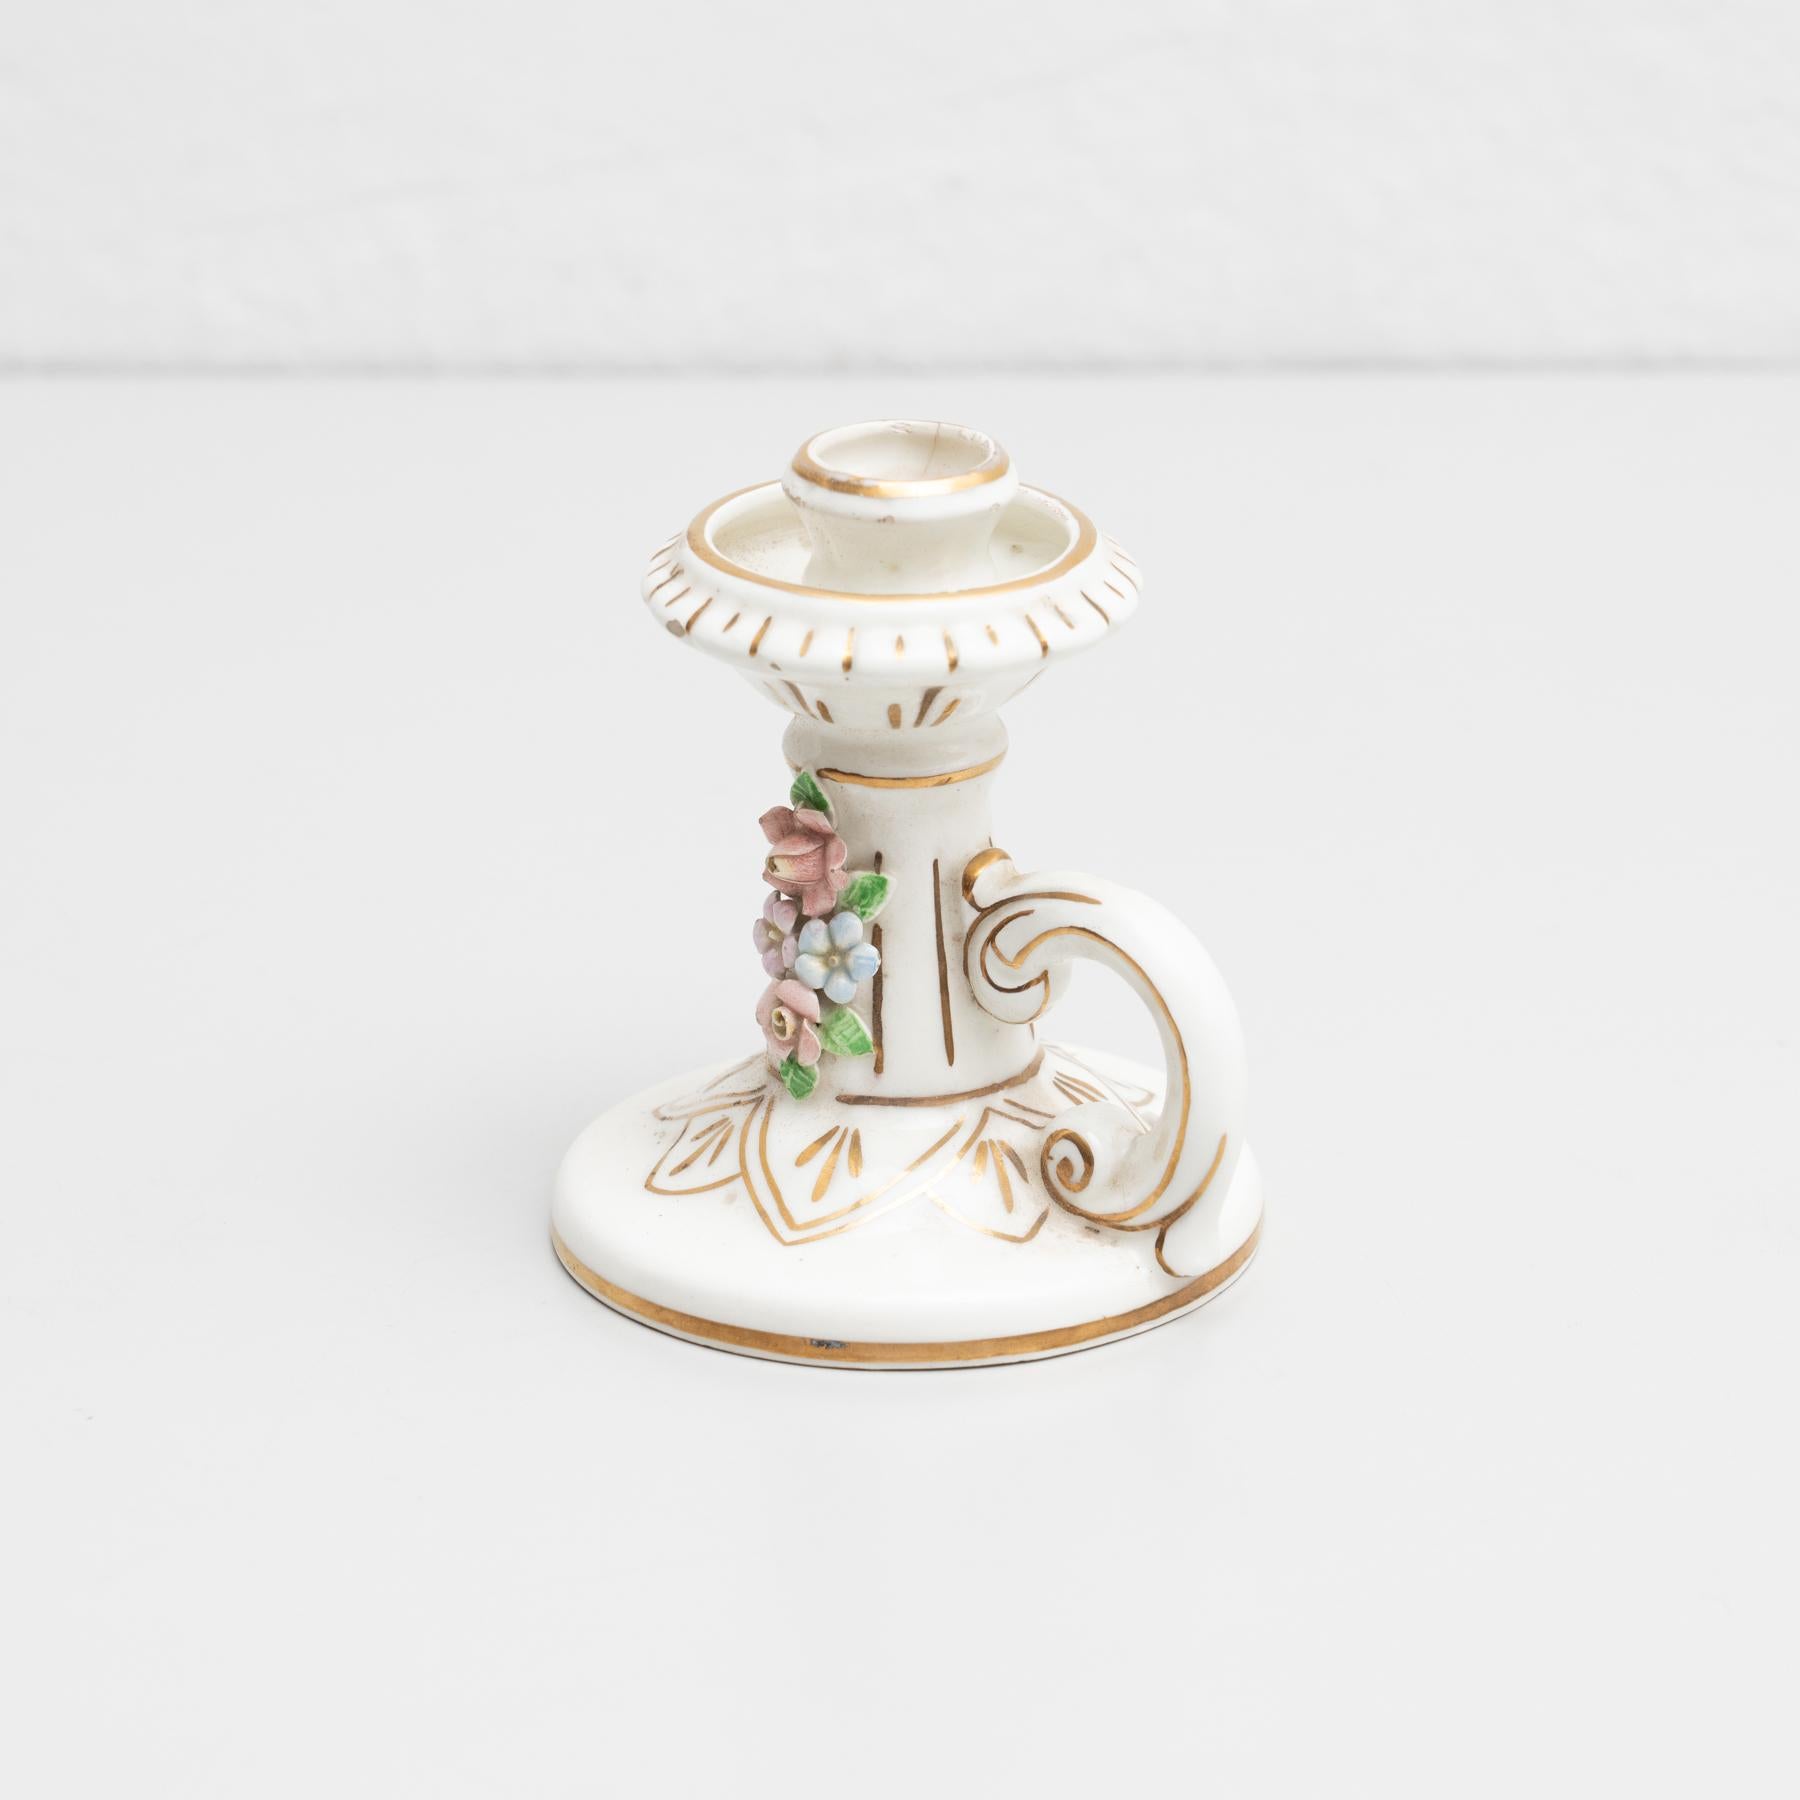 Traditioneller, handbemalter Kerzenhalter aus Keramik mit Blumenmuster.

Hergestellt von einem unbekannten Hersteller in Spanien, um 1960.

Originaler Zustand mit geringen alters- und gebrauchsbedingten Abnutzungserscheinungen, der eine schöne